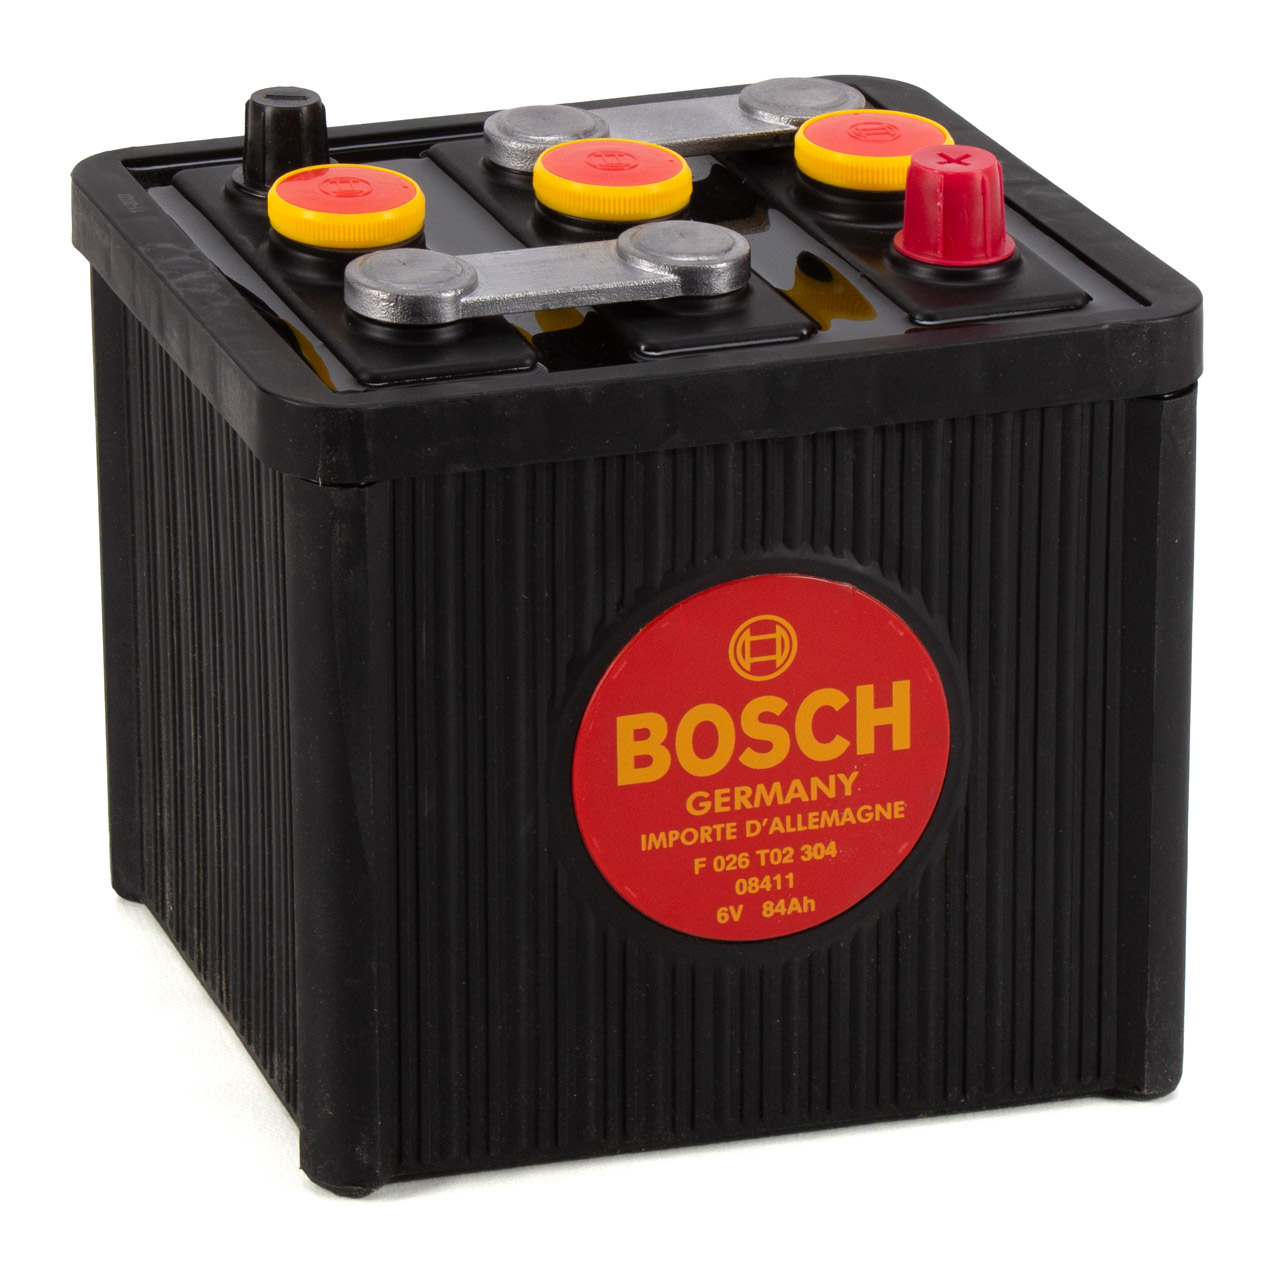 BOSCH Starterbatterien / Autobatterien - F 026 T02 304 - ws